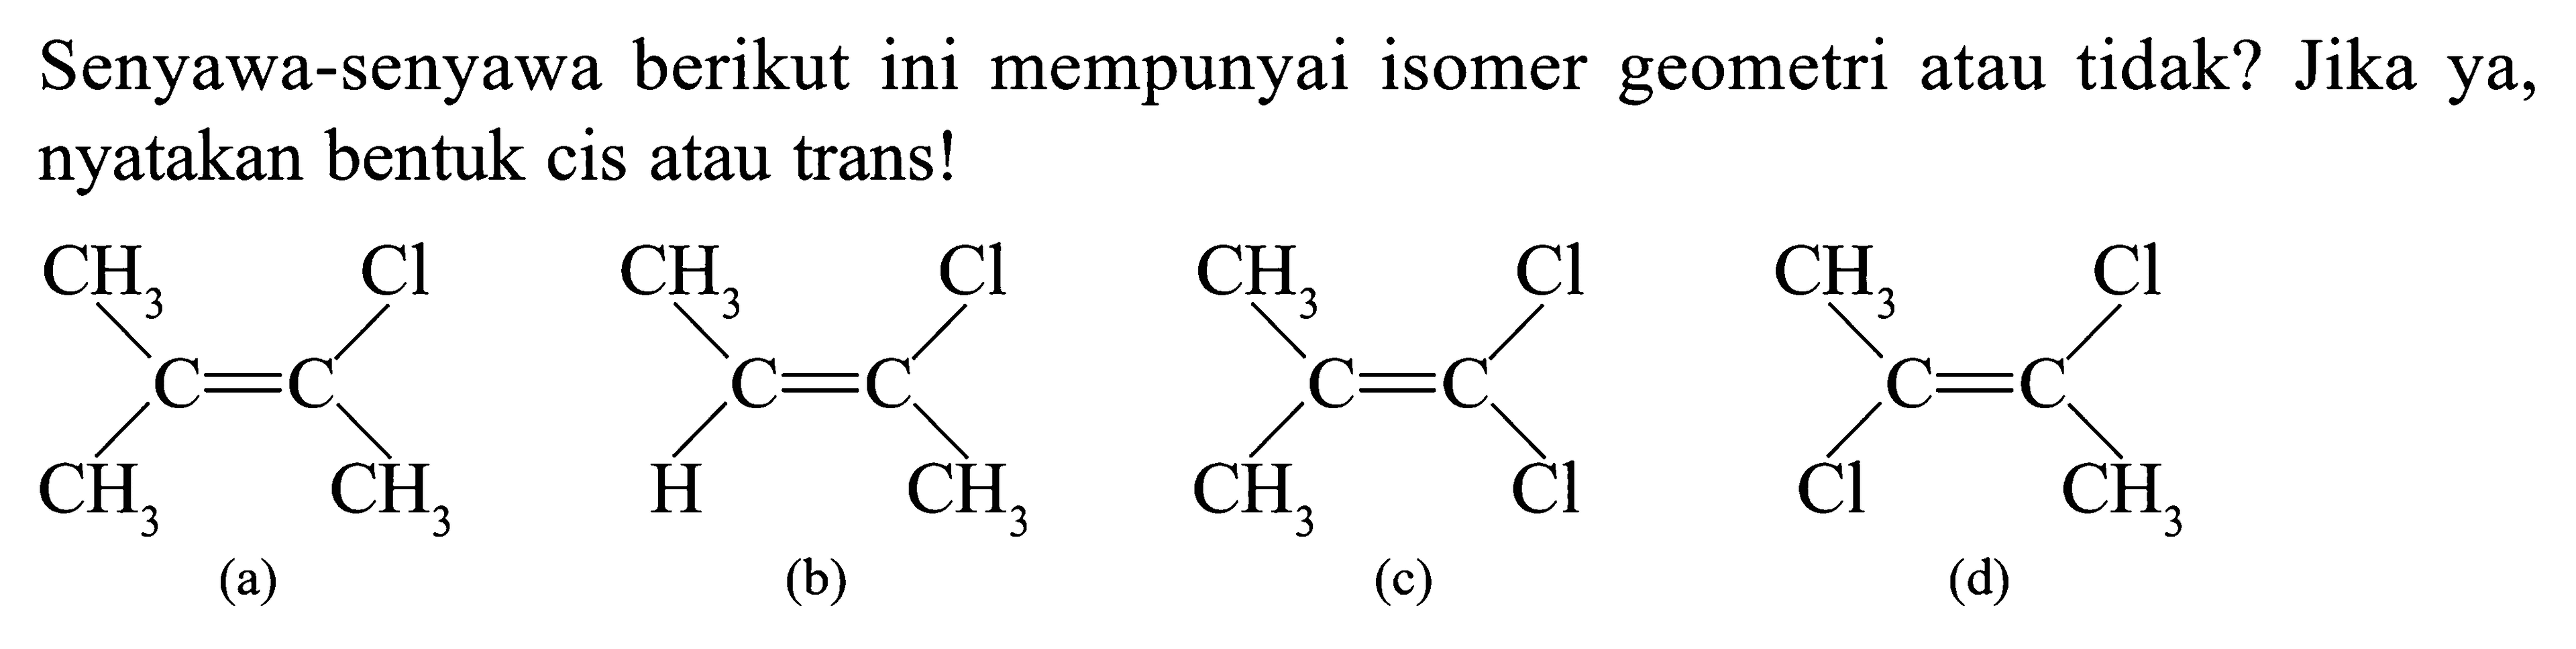 Senyawa-senyawa berikut ini mempunyai isomer geometri atau tidak? Jika ya, nyatakan bentuk cis atau trans!